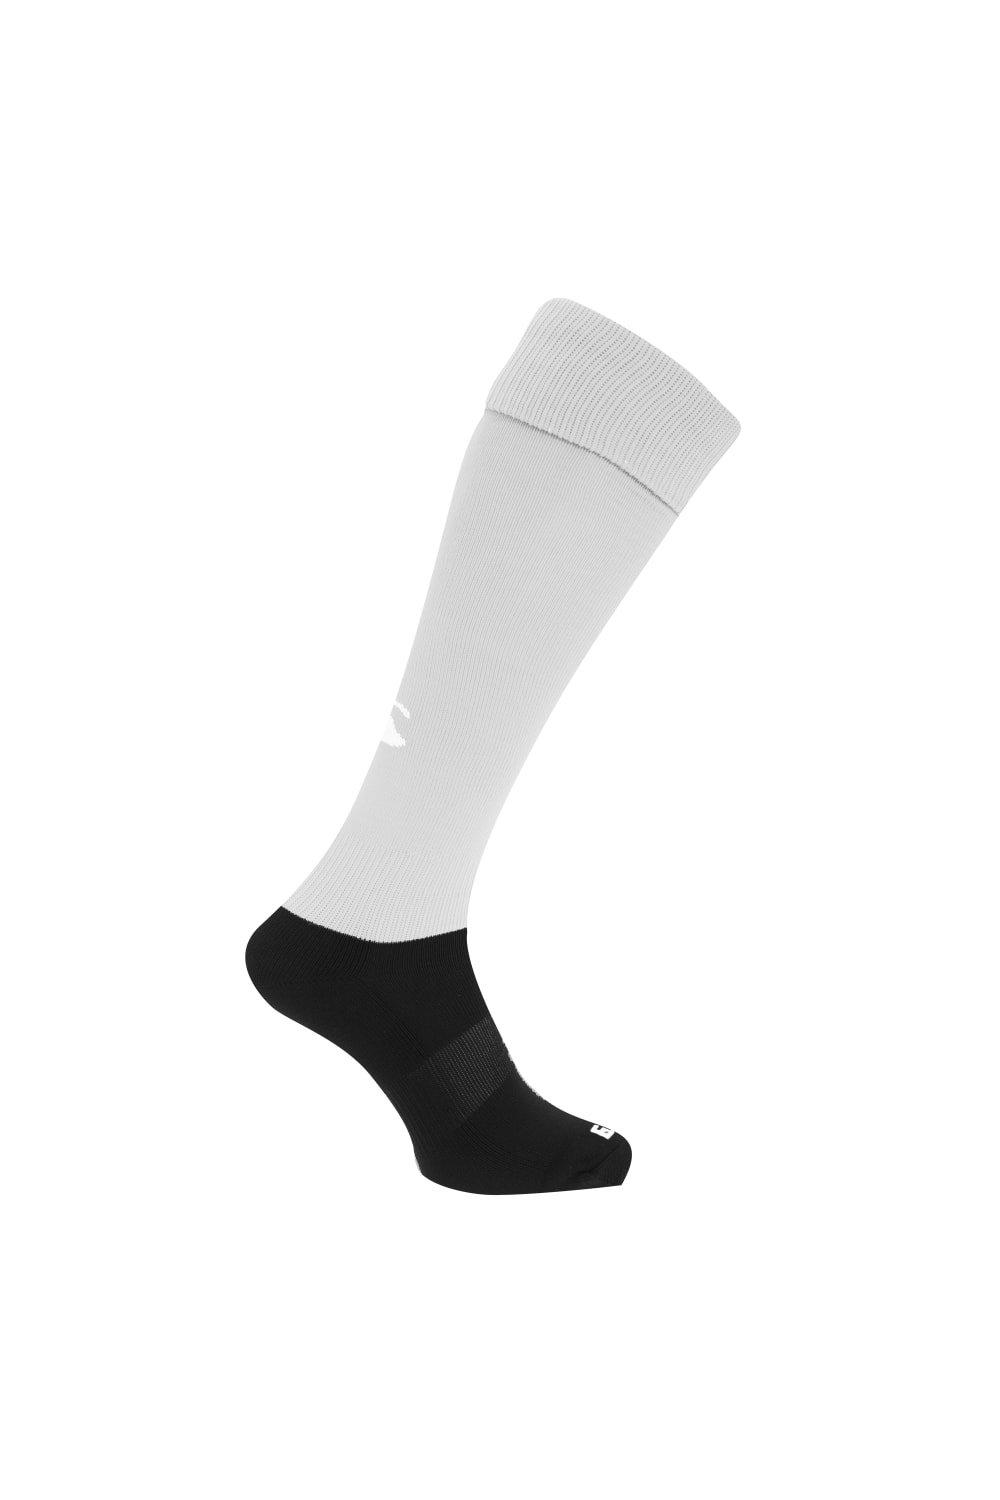 Спортивные носки для игры в регби Canterbury, белый регбийка размер xl русский 52 сборной австралии по регби 13 rugby league canterbury